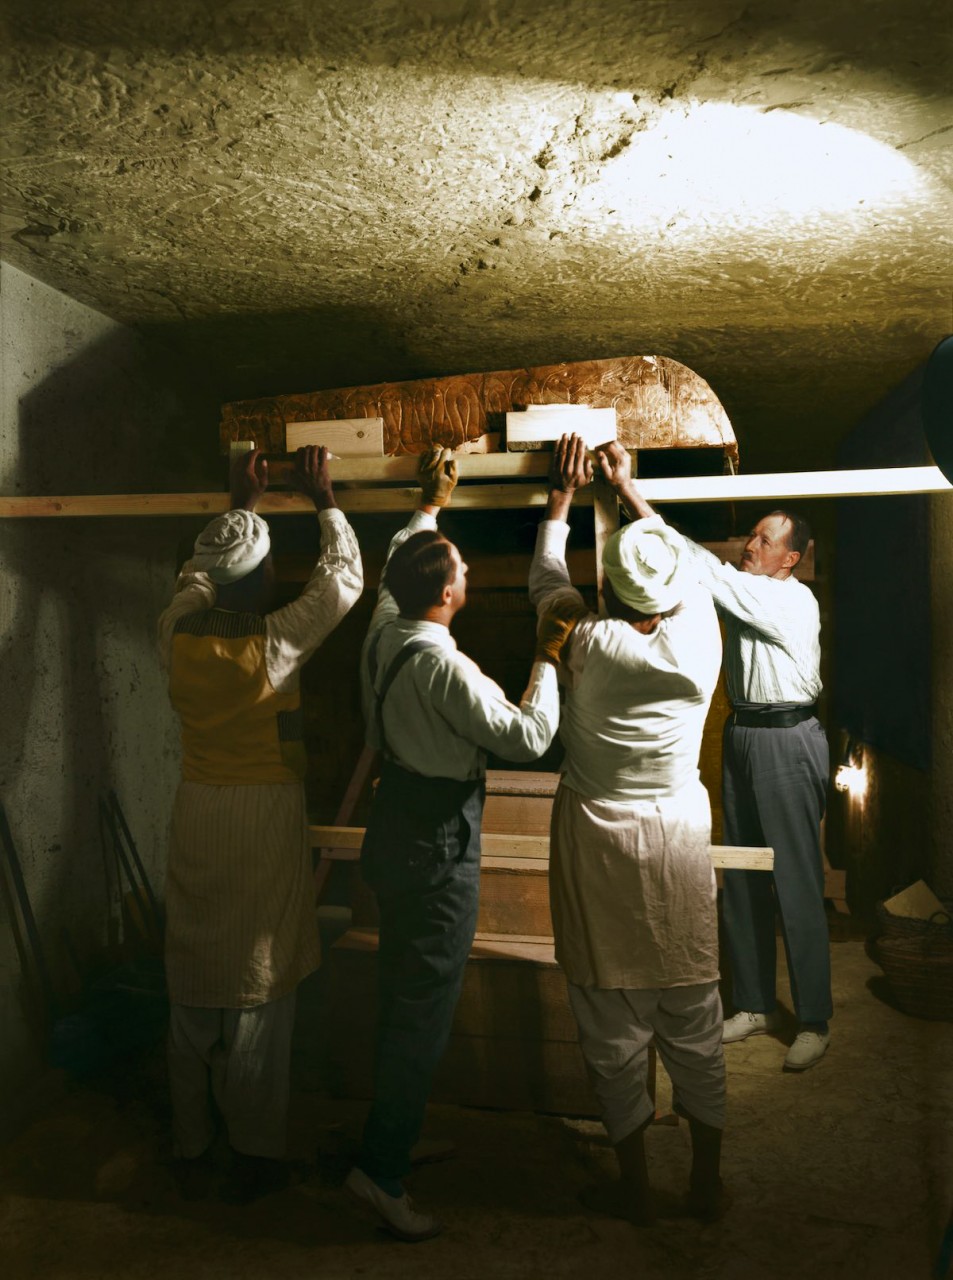 История обнаружения гробницы Тутанхамона в цветных фотографиях